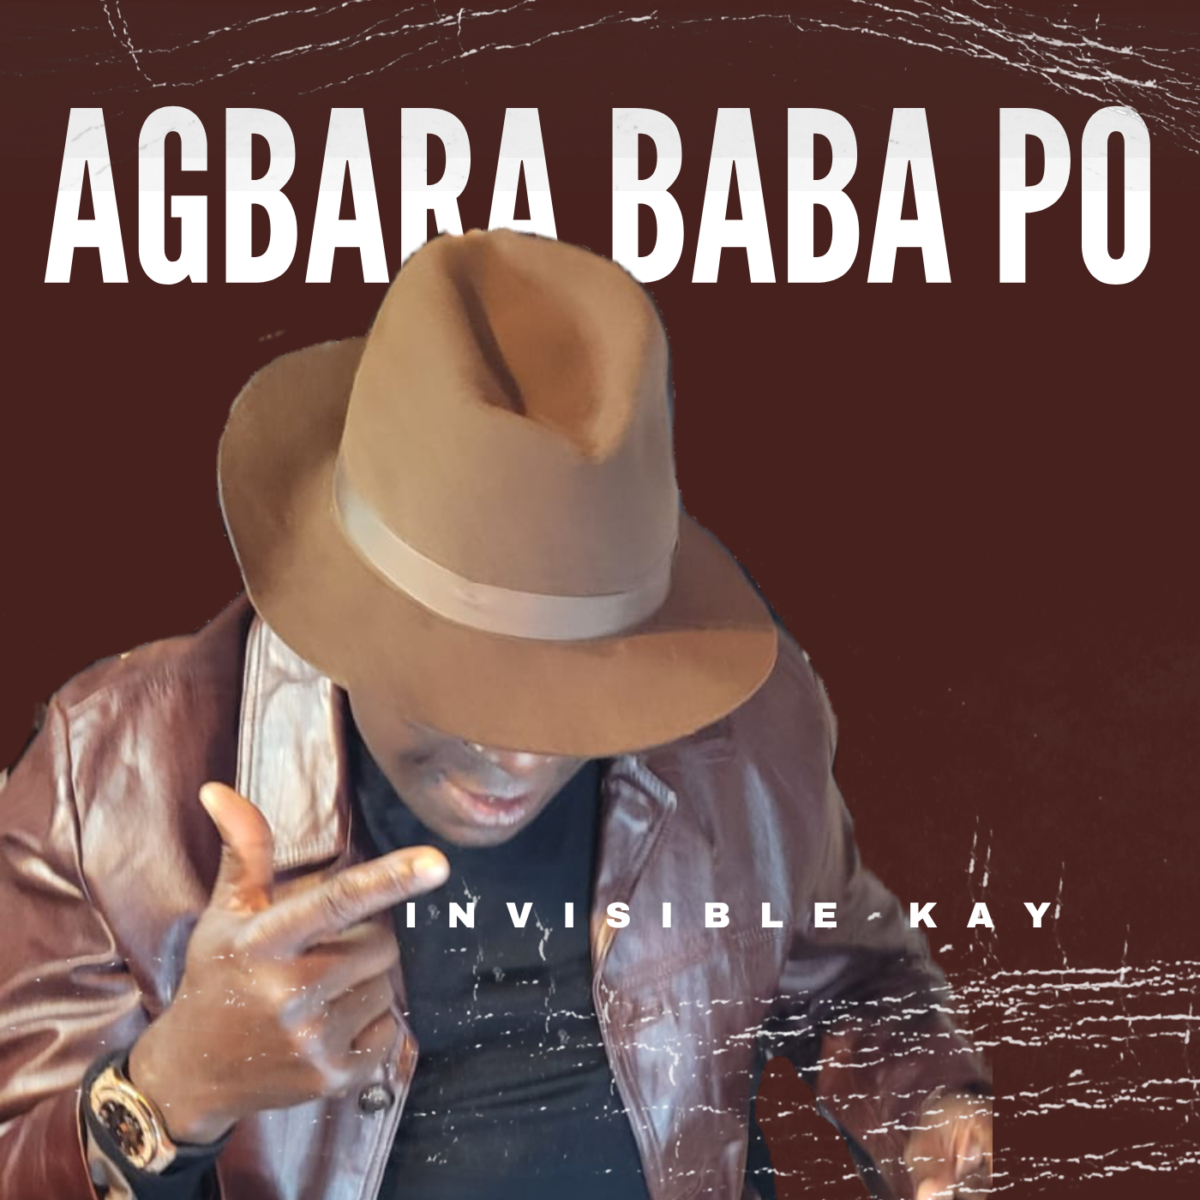 Invisible Kay – Agbara Baba Po | @invisiblekay330